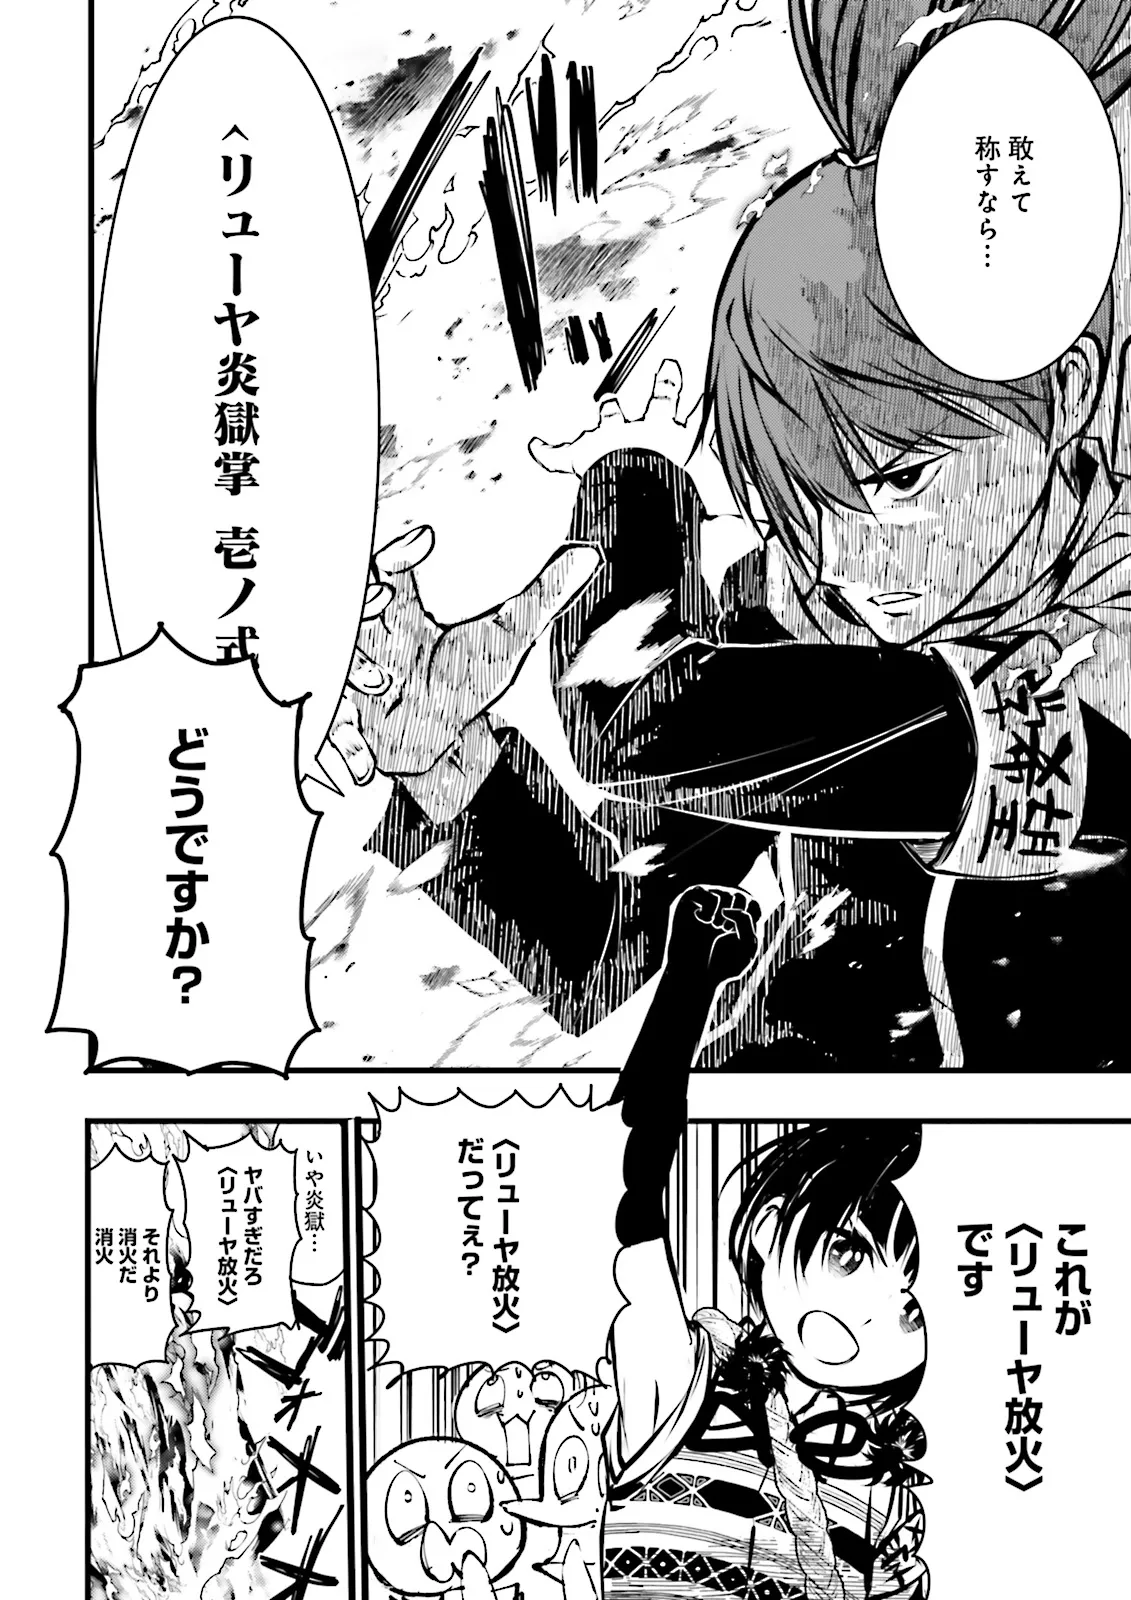 Sukiru Ga Nakereba Level wo Ageru ~ 99 Ga Kansuto No Sekai De Reberu 800 Man Kara Sutato ~ - Chapter 37.3 - Page 2